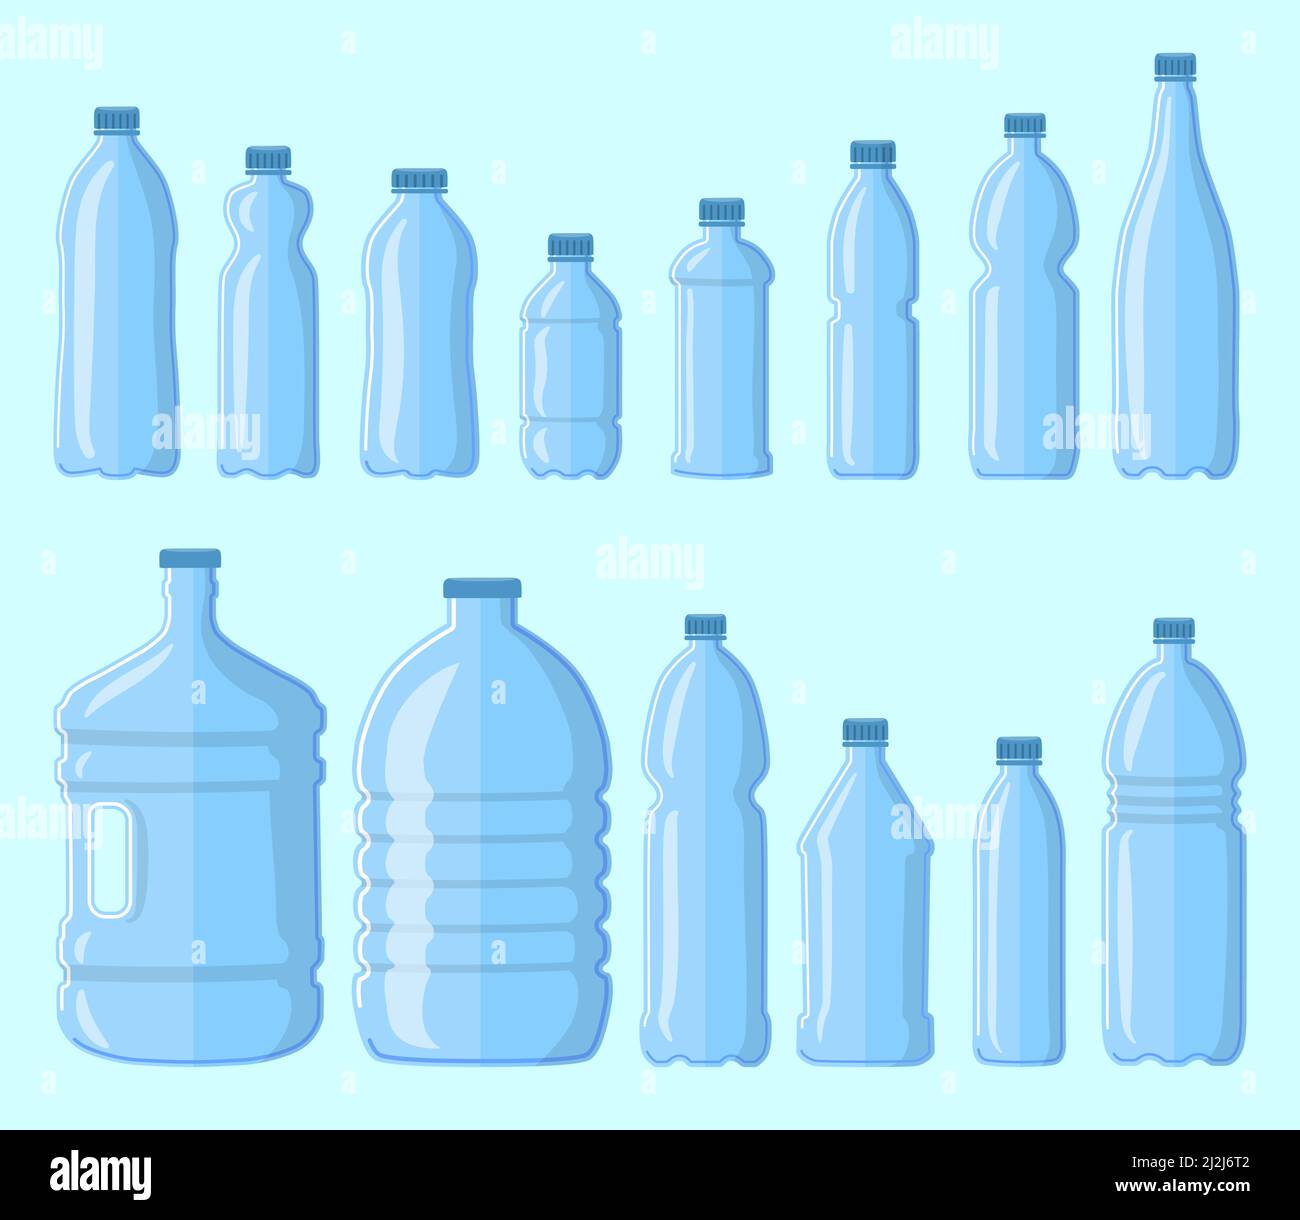 Jeu de bouteilles en plastique pour l'eau.Illustration vectorielle de dessin animé.Collection de flacons de différentes tailles et formes isolés sur fond bleu.Consommation Illustration de Vecteur